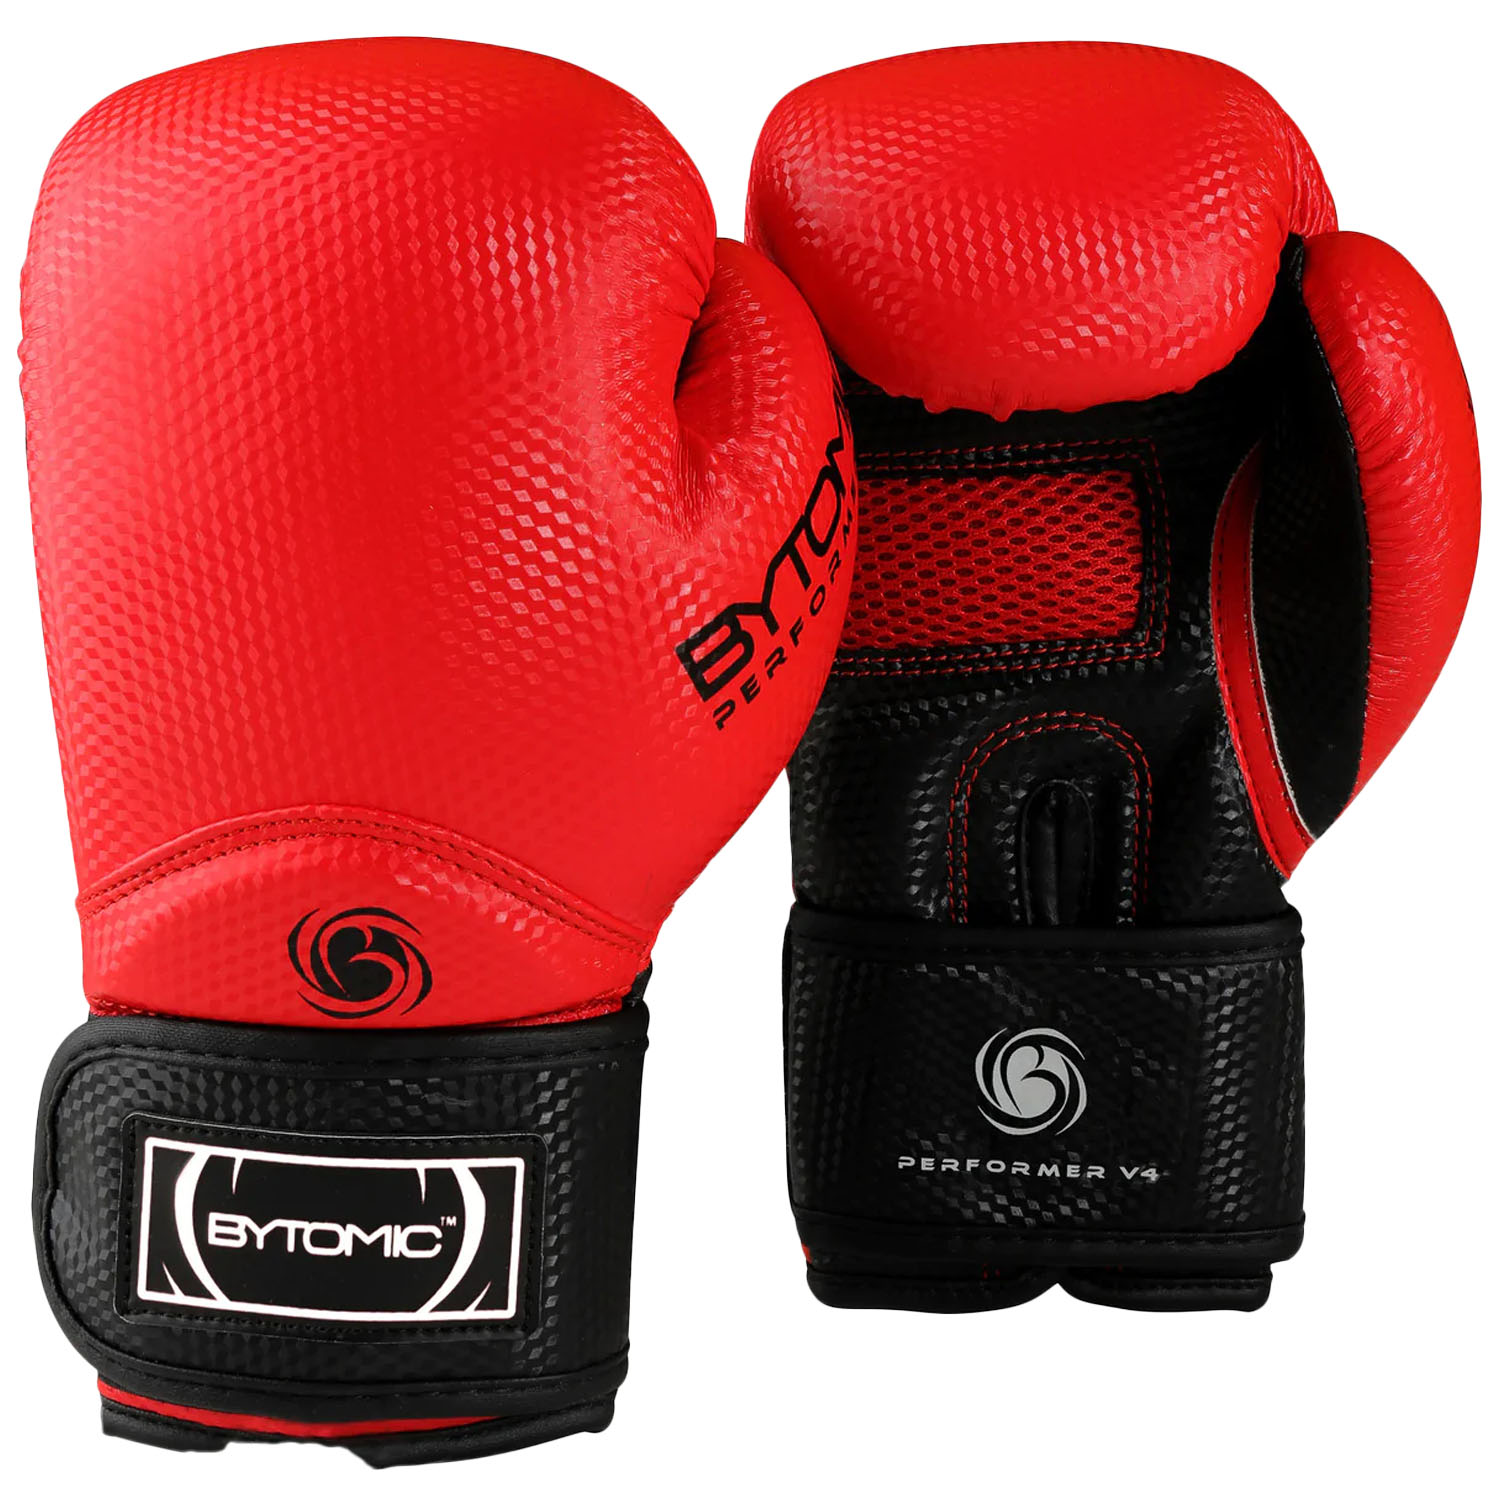 Bytomic Boxing Gloves, Performer, V4, rot, 10 Oz